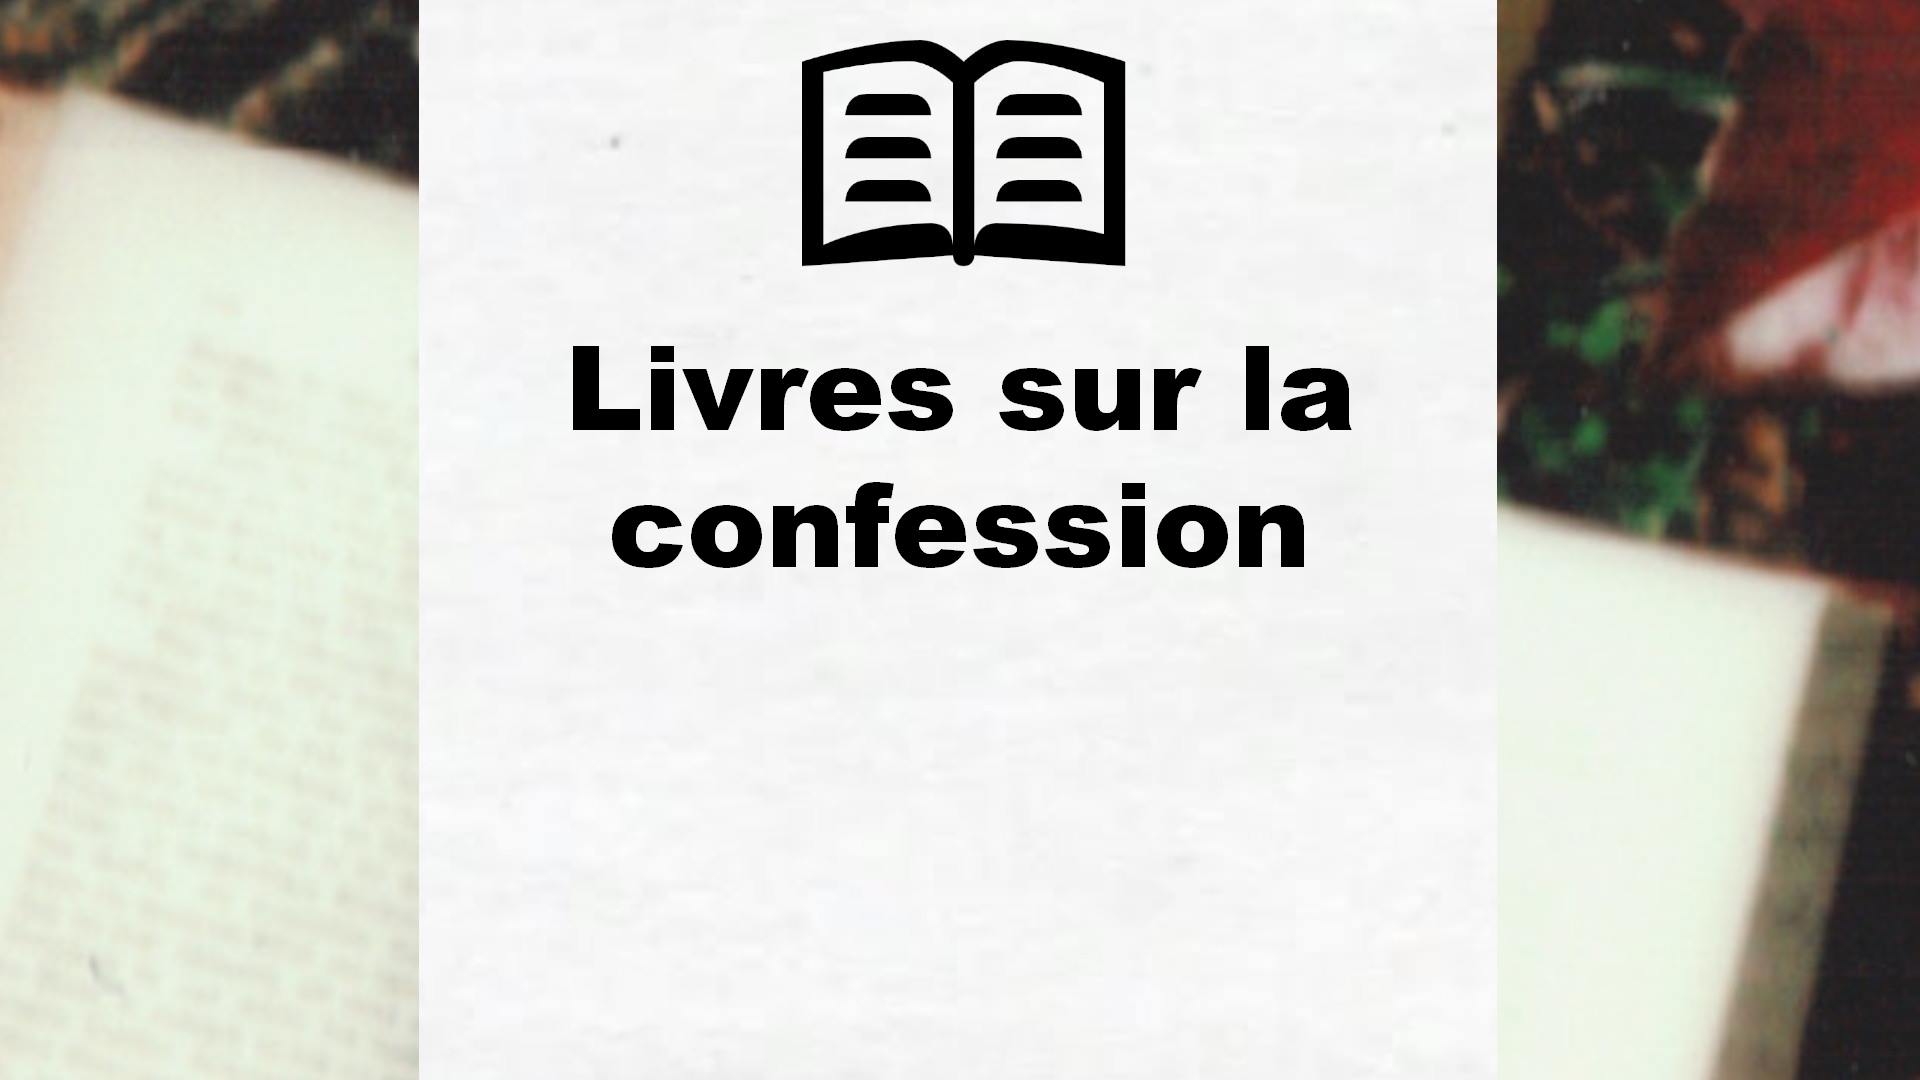 Livres sur la confession